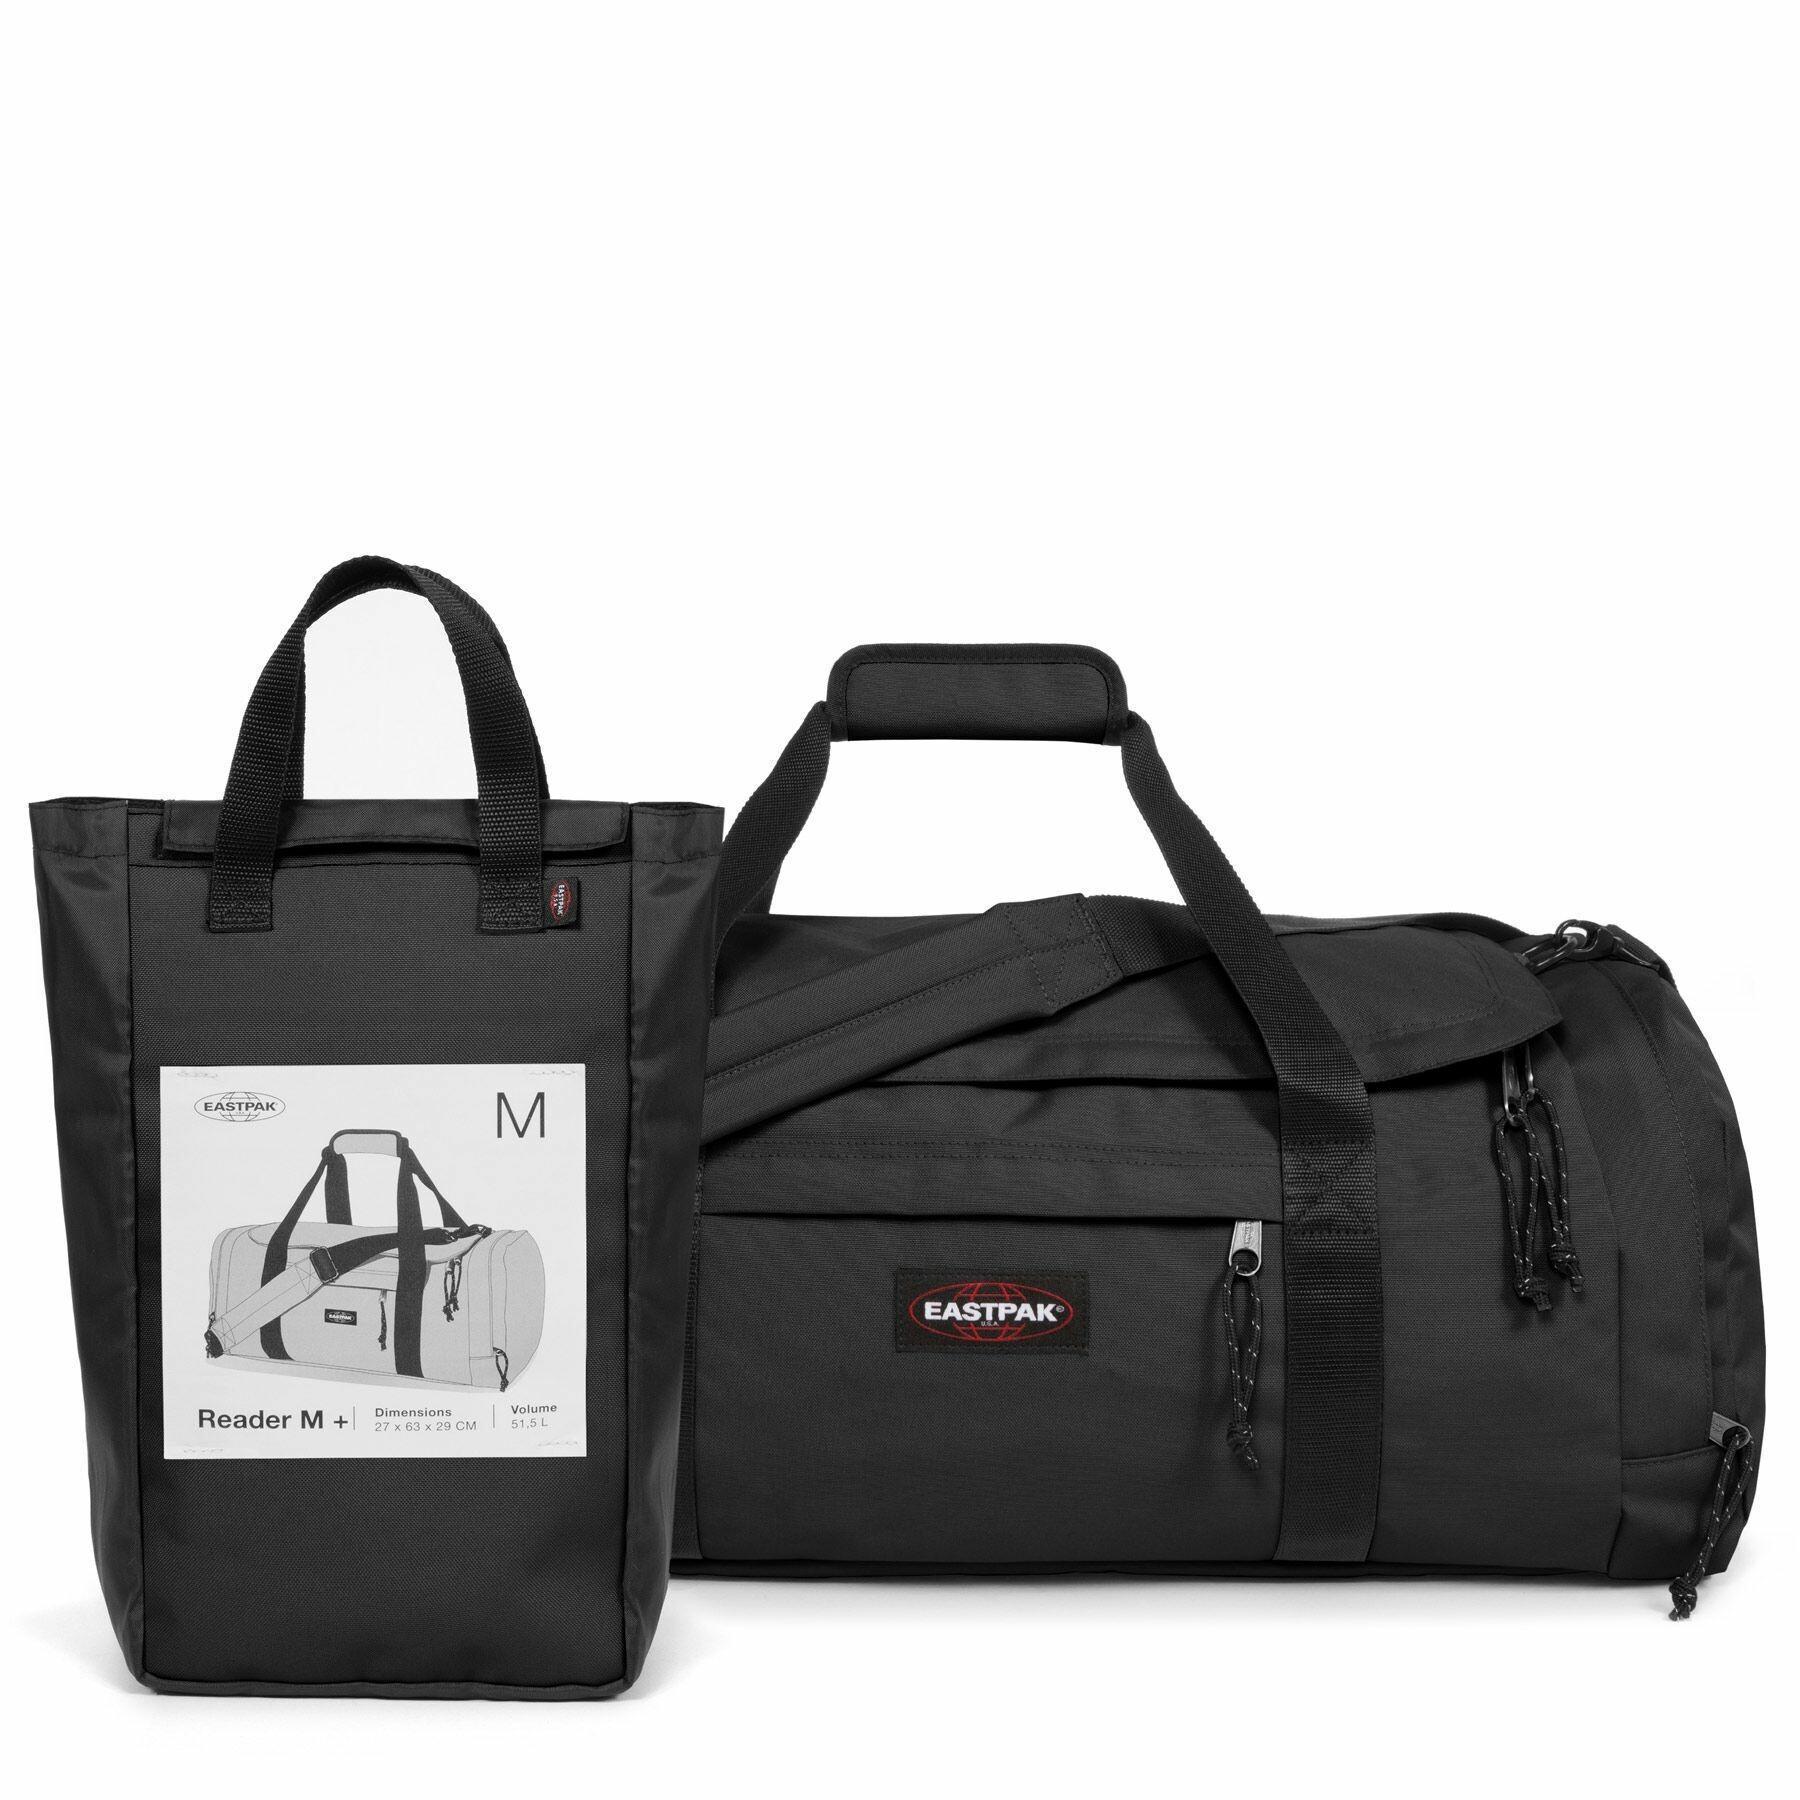 Travel bag Eastpak Reader M Plus